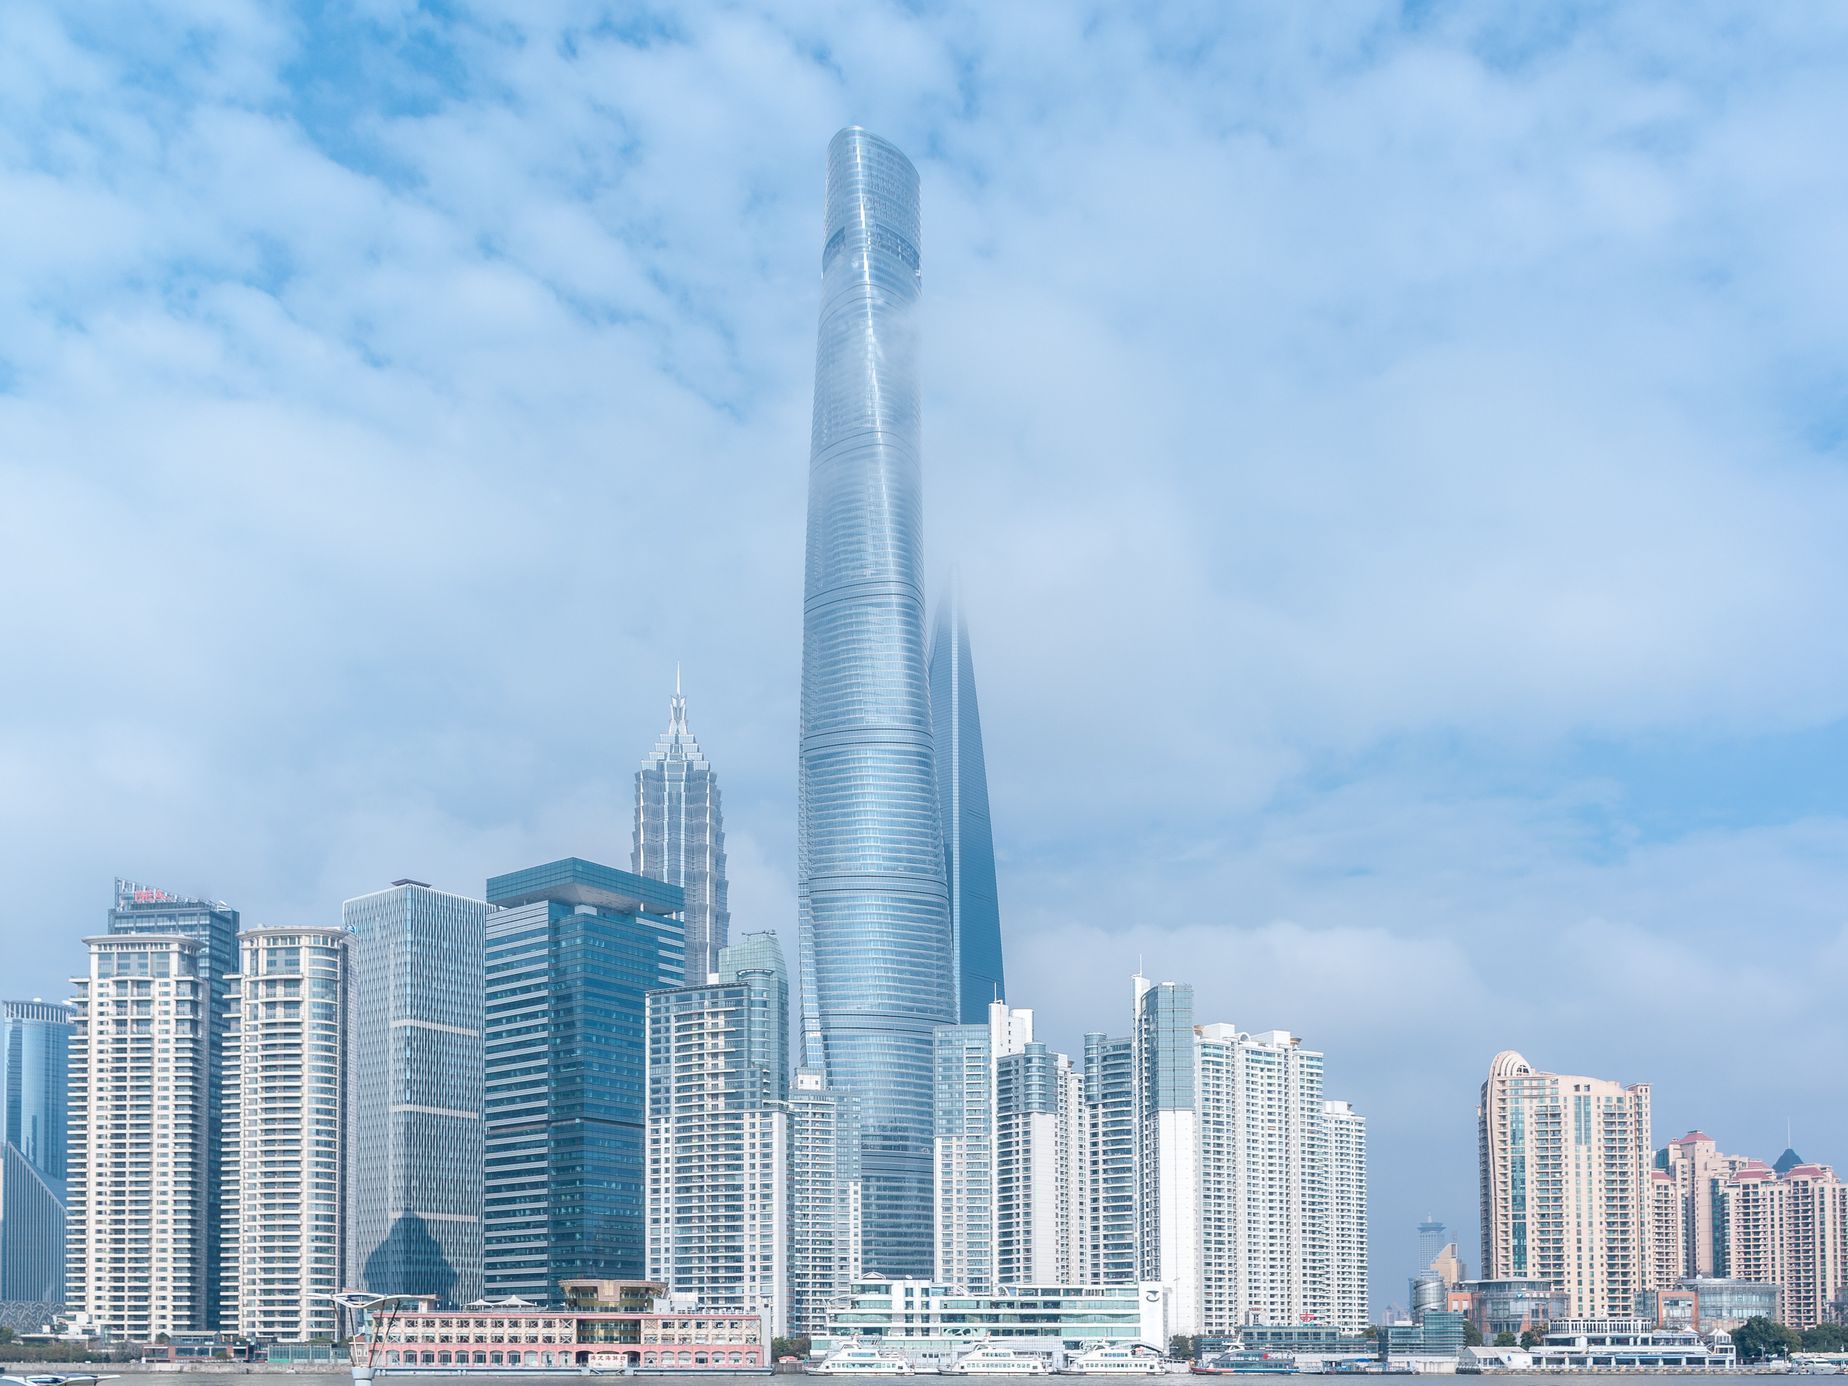 Shanghai Tower  / Jednorázové užití / Fotogalerie / Podívejte se na fotografie 10 nejvyšších budov světa